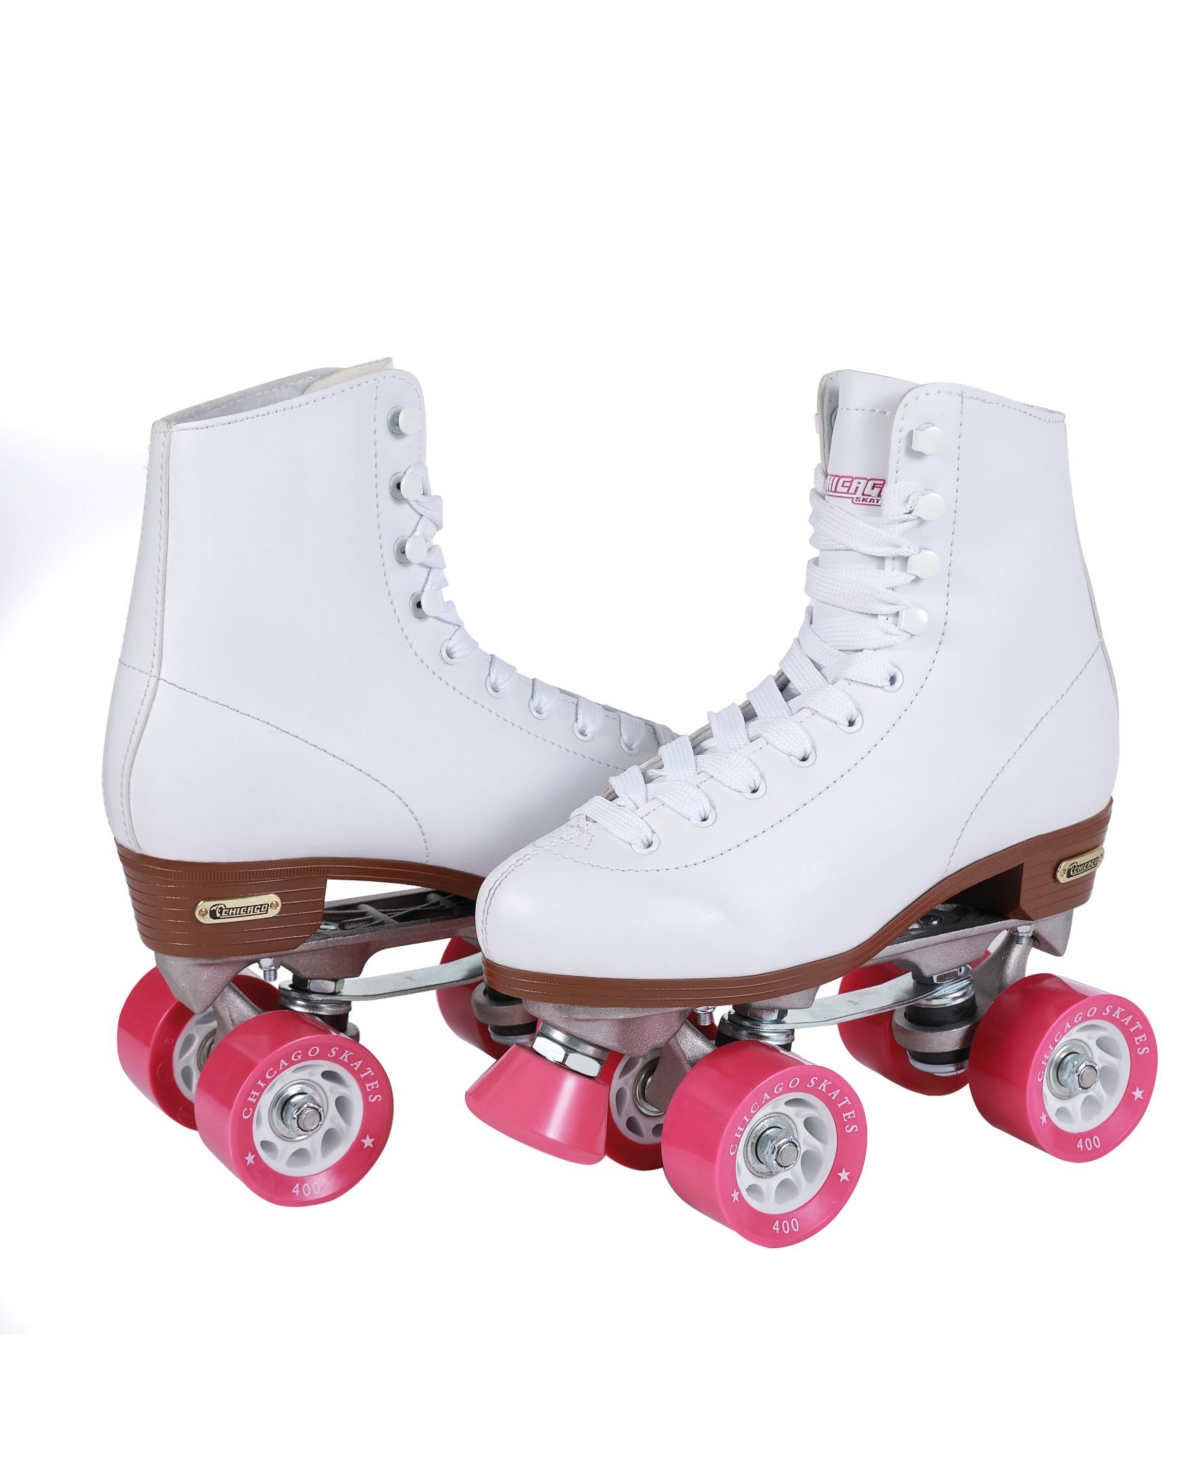 Women's Rink Roller Skates - Size 7 - White